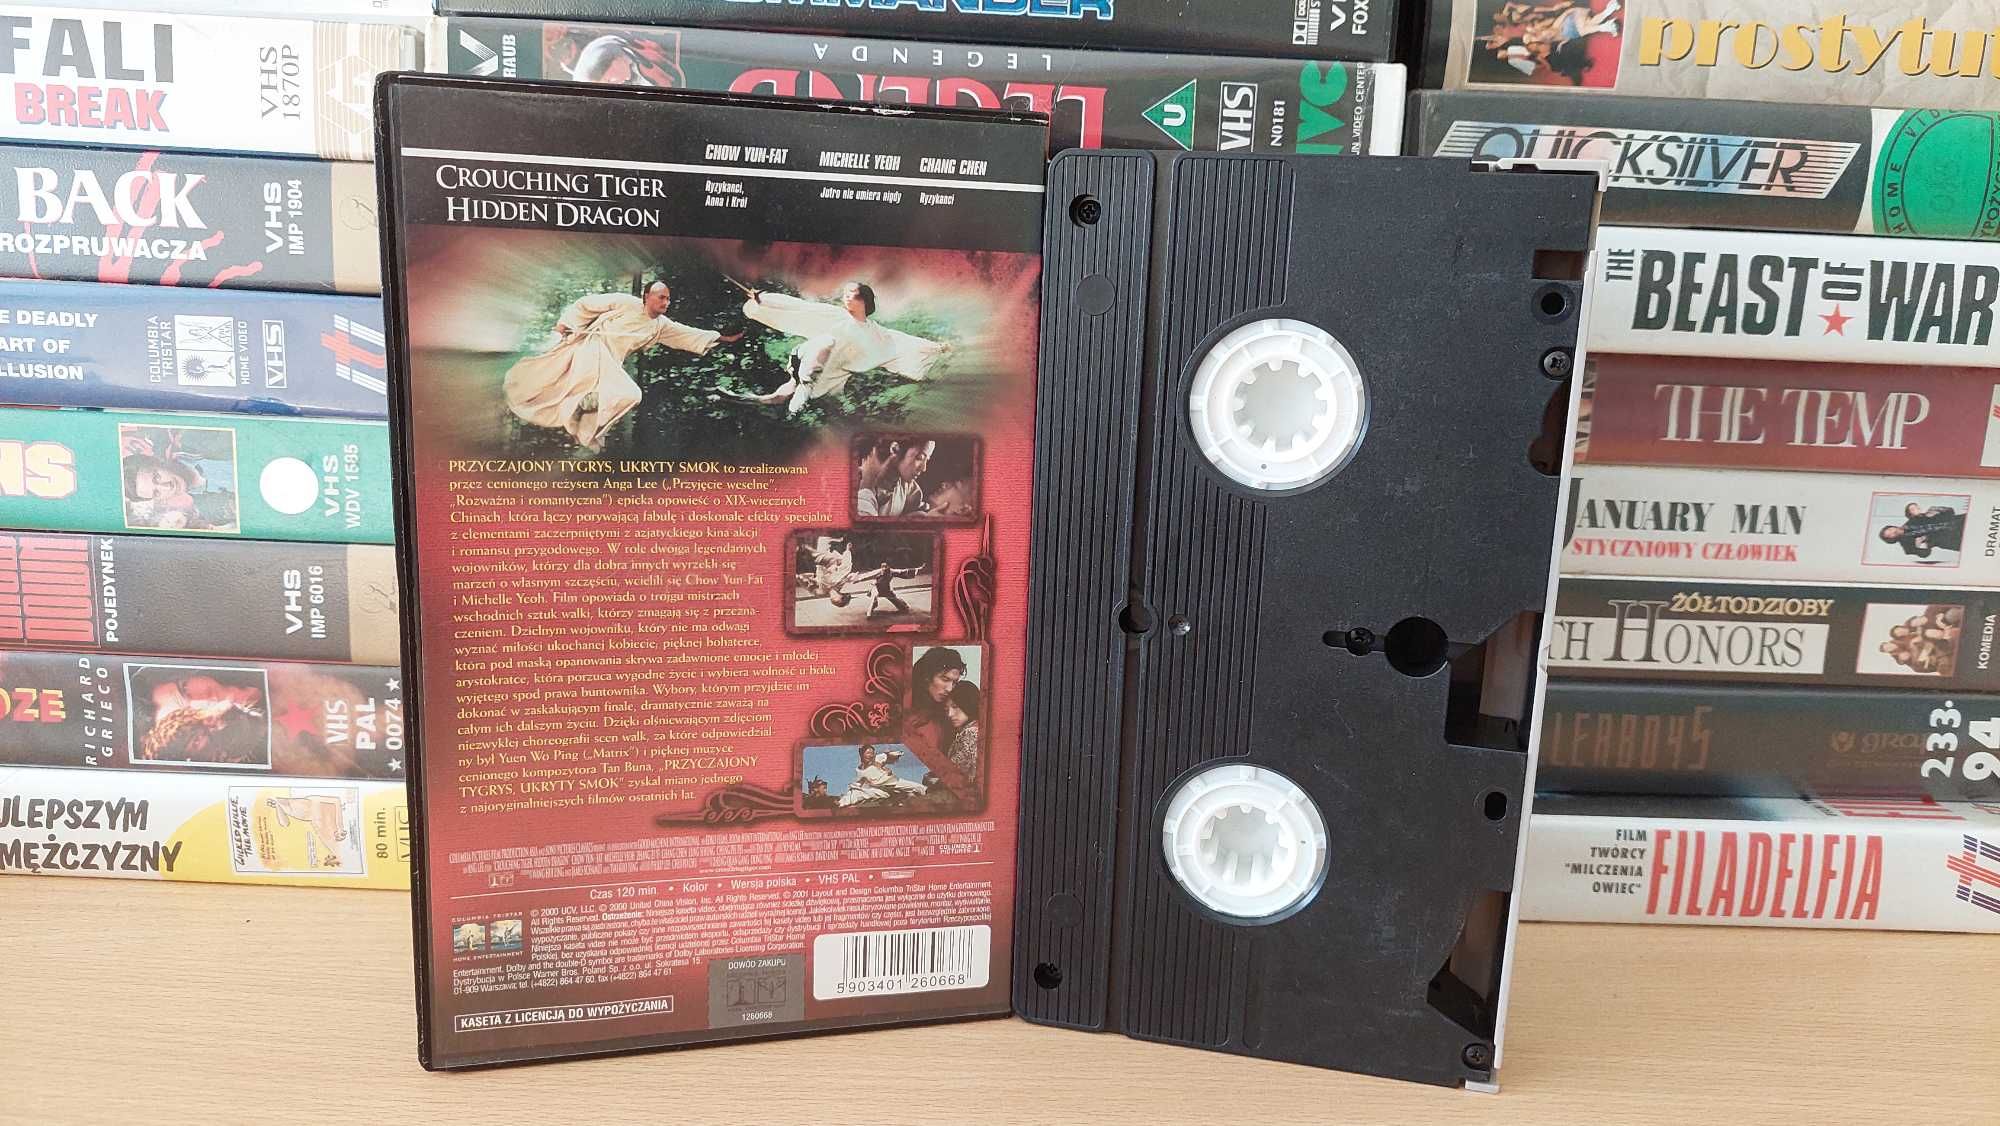 Przyczajony Tygrys, Ukryty Smok - (Wo Hu Cang Long) - VHS